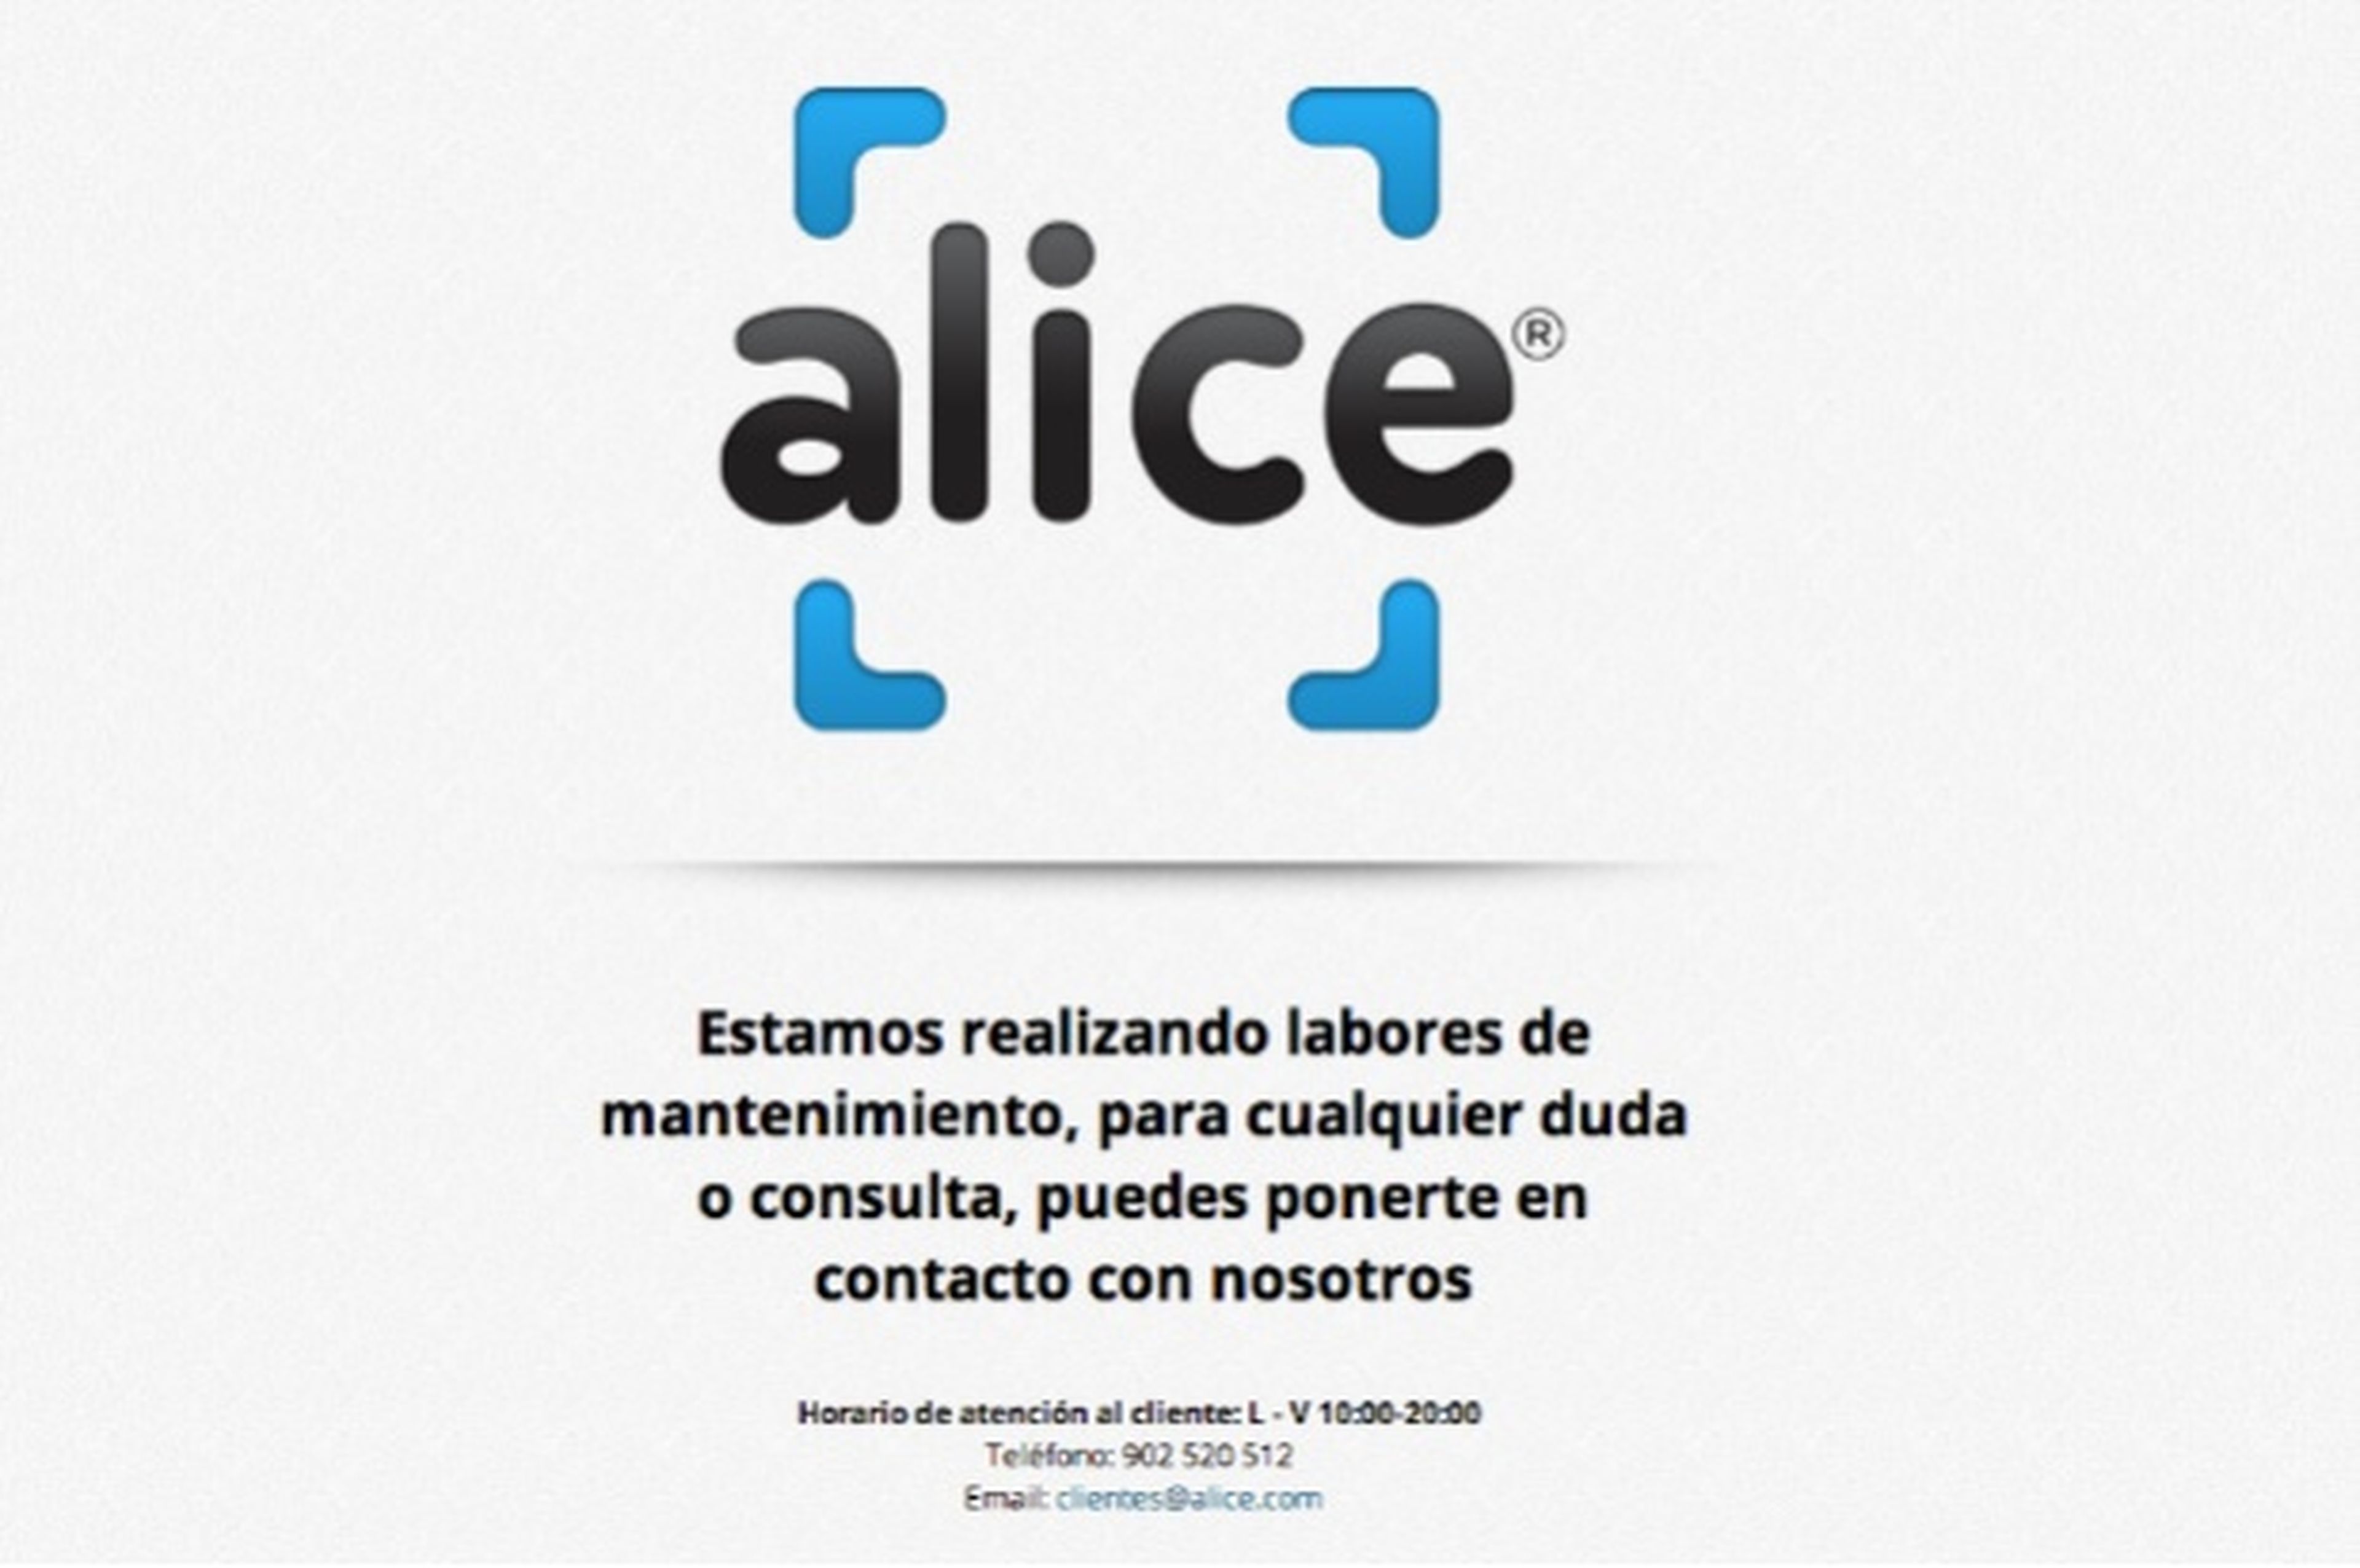 Alice cierra en España